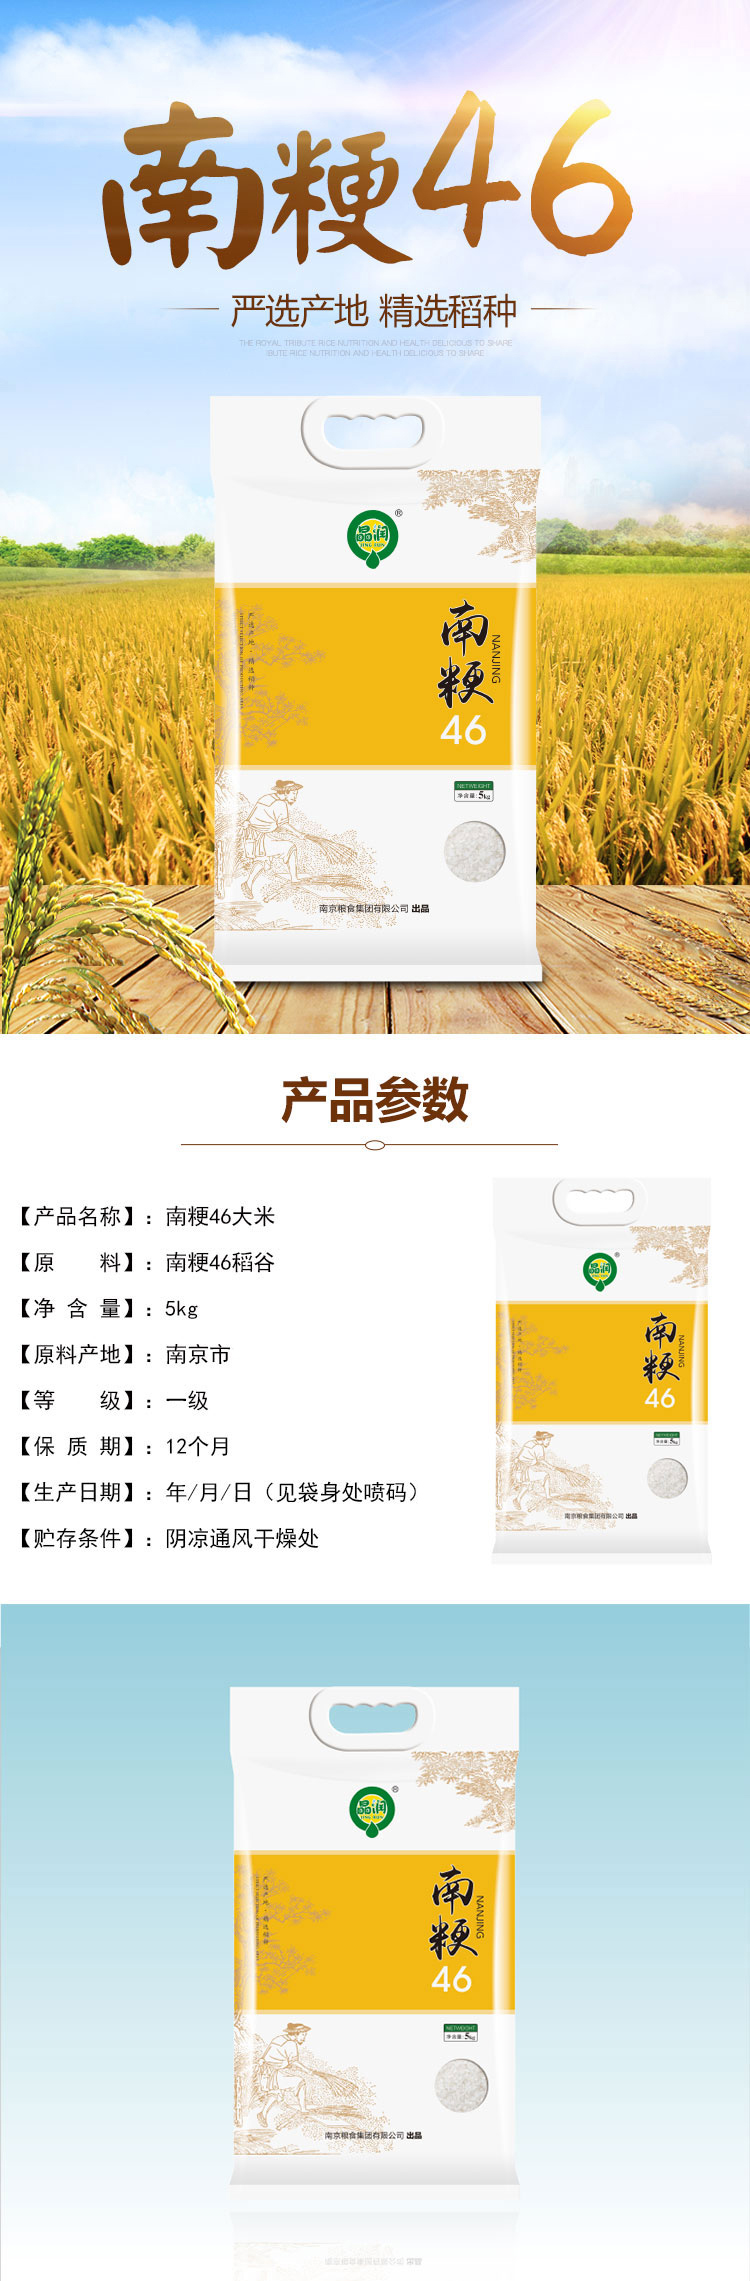 晶润 南粳46大米 5公斤 水稻种植基地播种 传统农耕 颗粒饱满 5kg